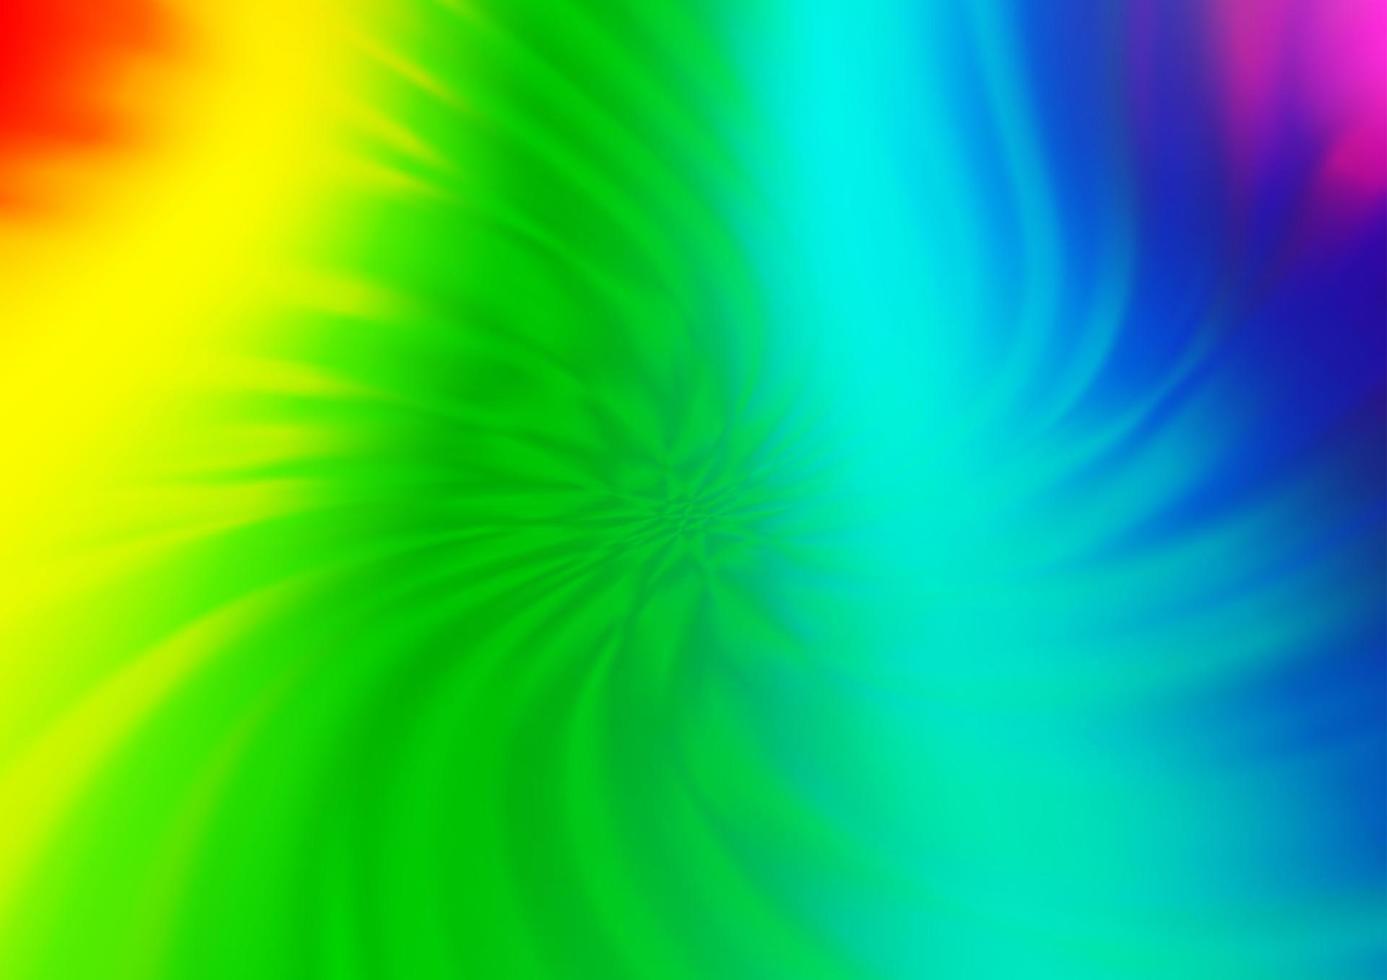 léger multicolore, motif de flou vectoriel arc-en-ciel.